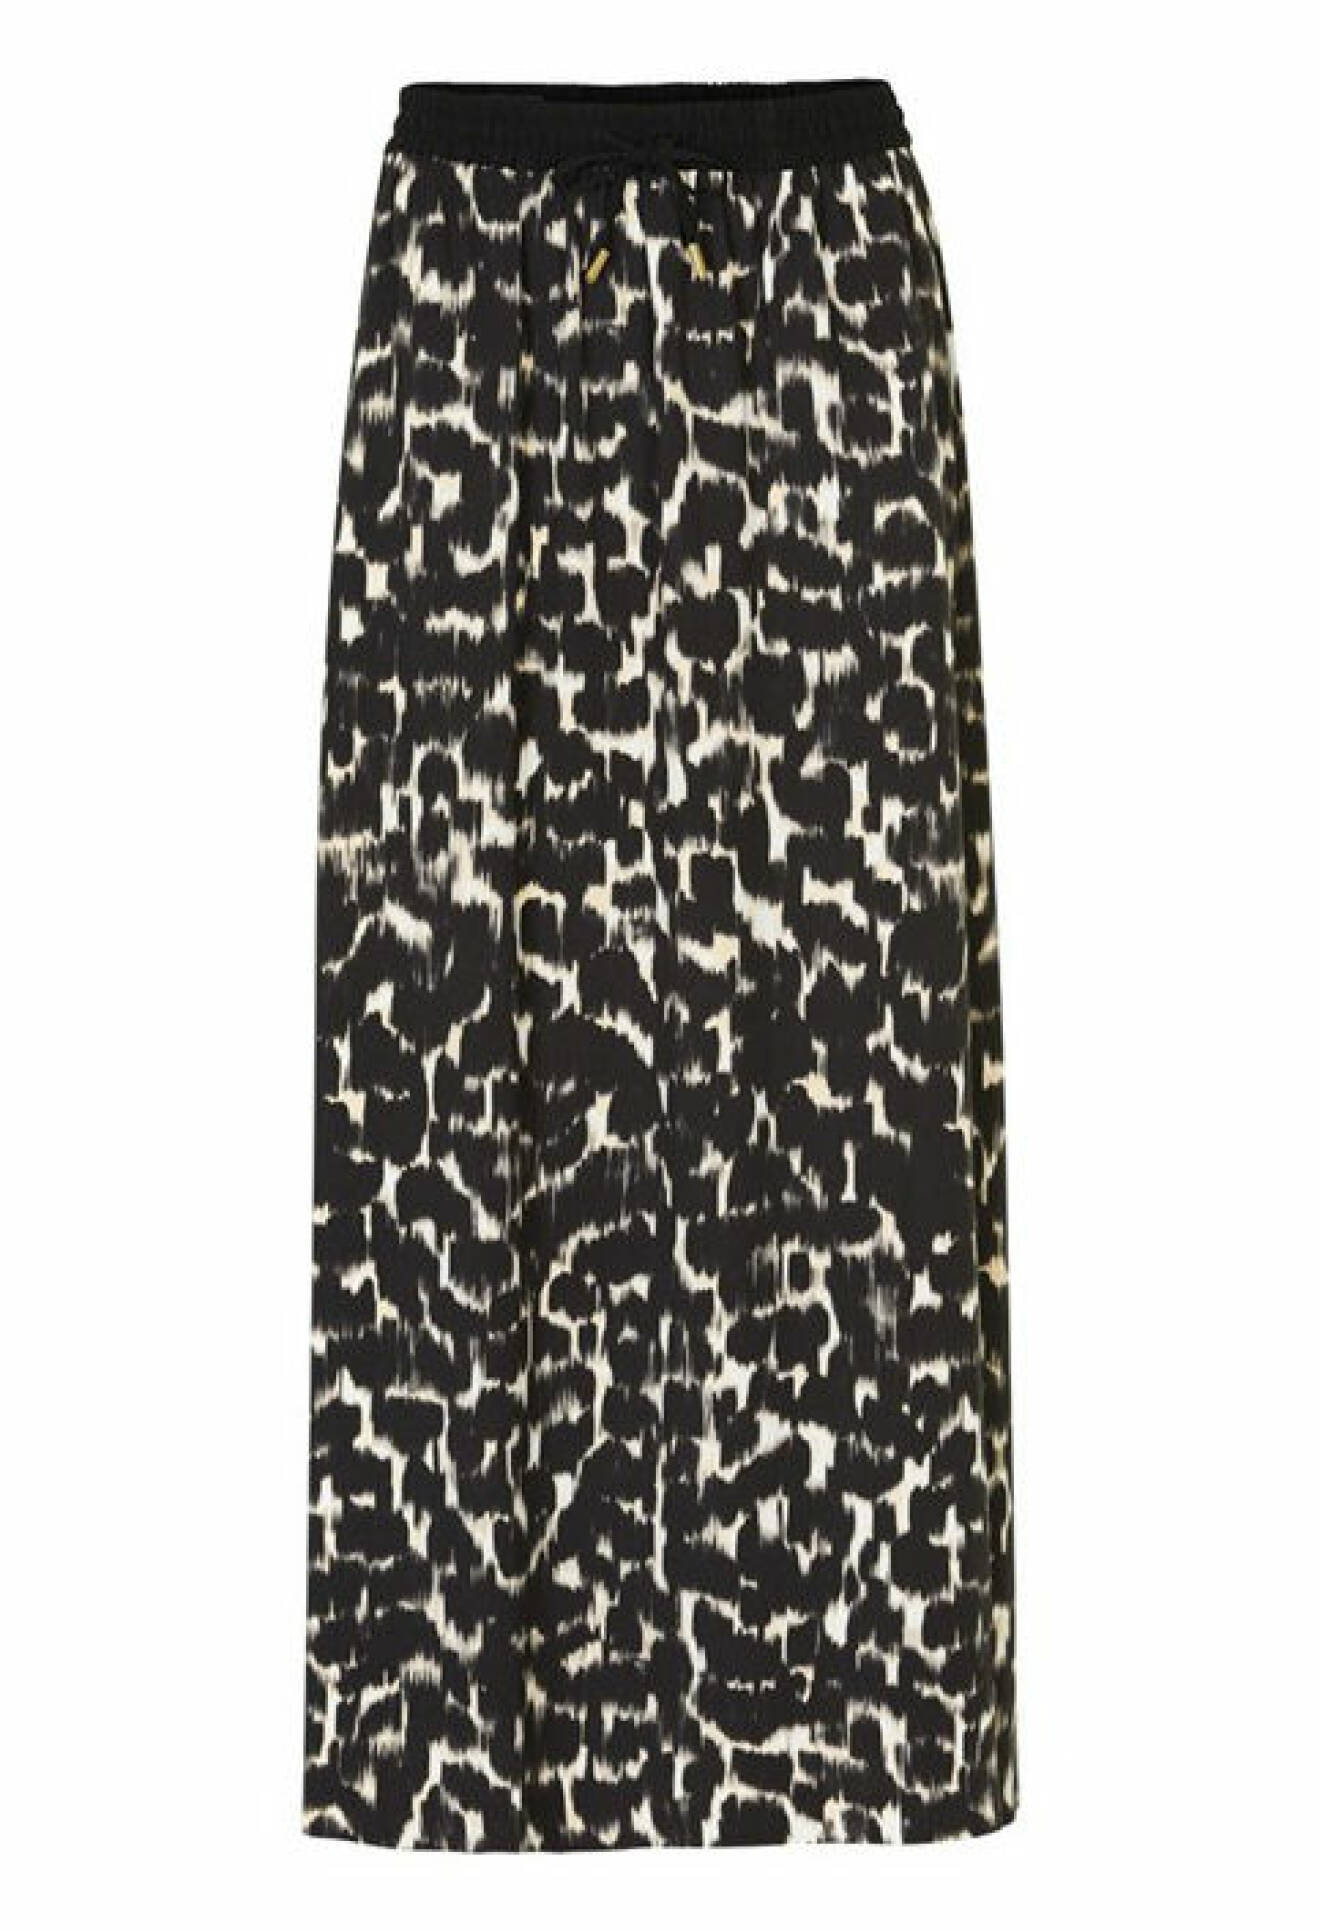 kjol-leopard-inwear